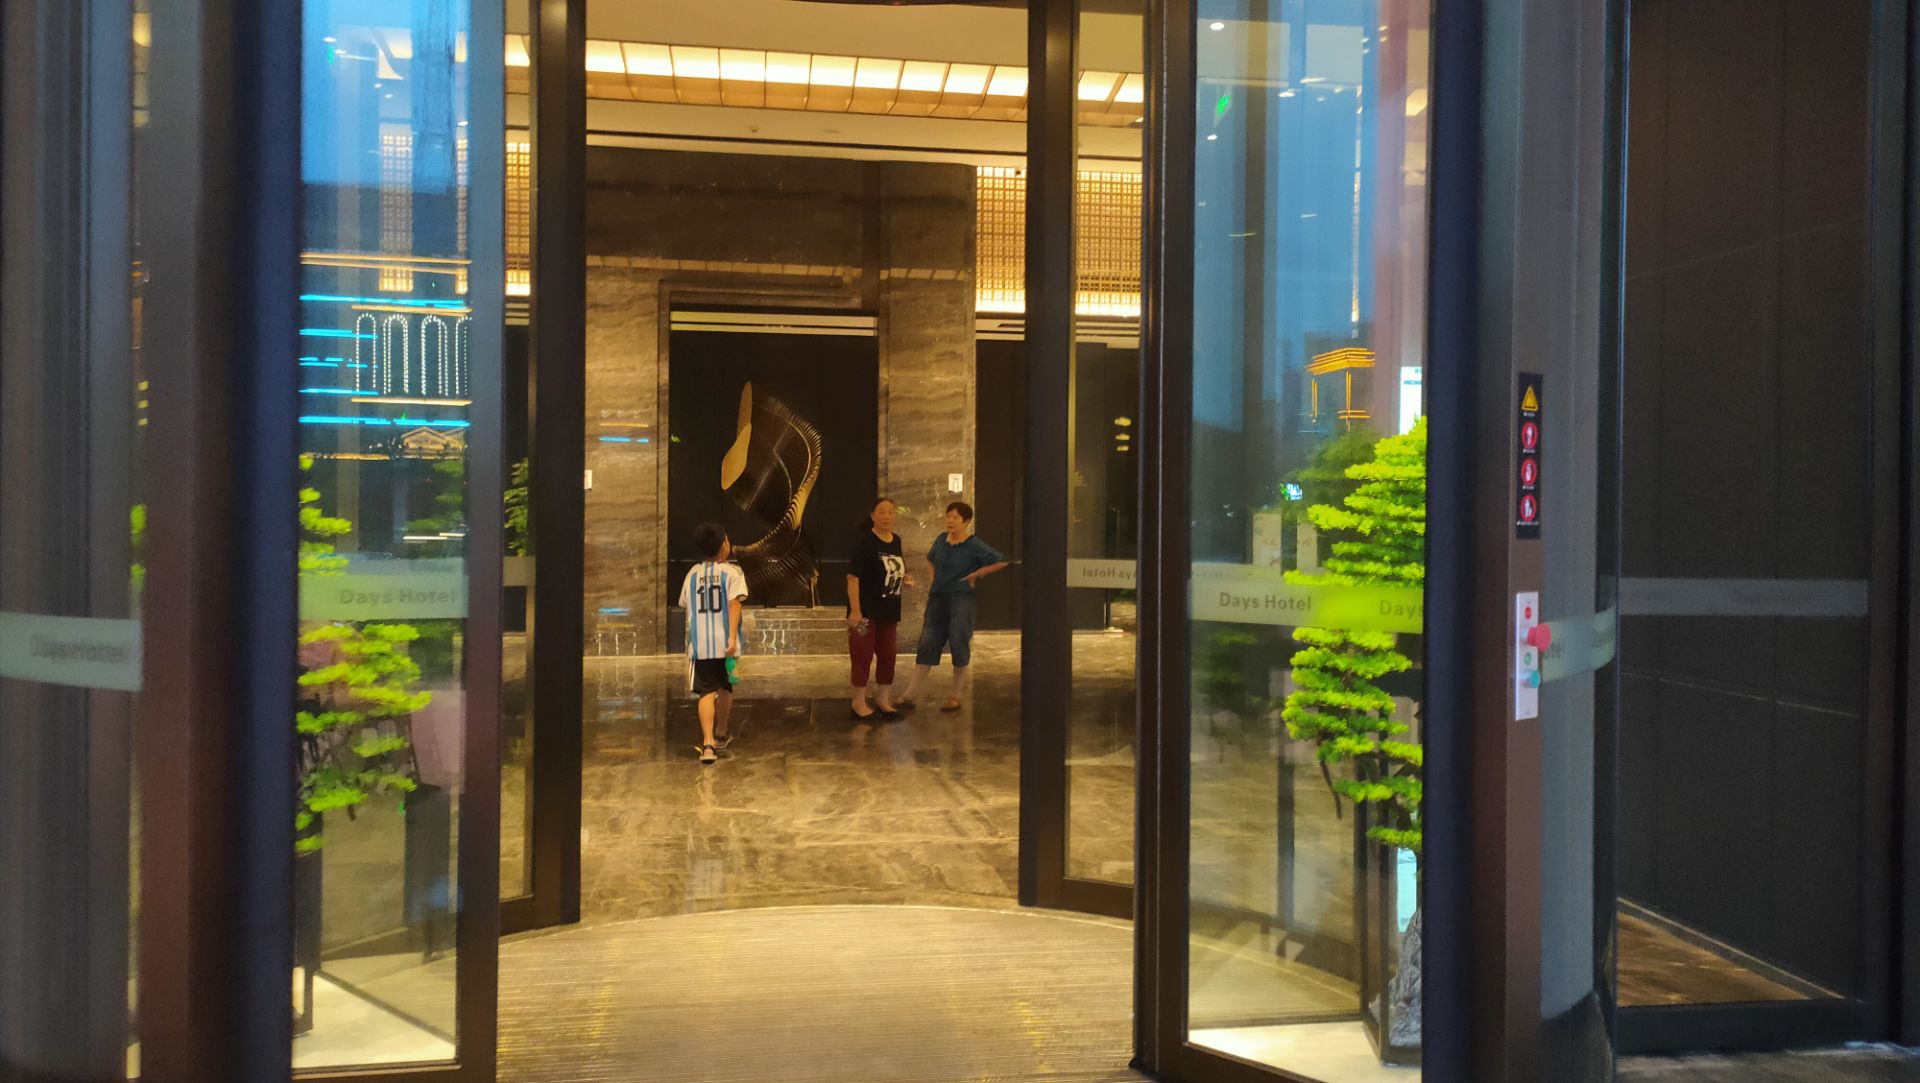 第一次入住沅江戴斯酒店，非常好的体验。大堂宽敞整洁，深色的格调显得格外时尚、优雅，而且整个空间弥漫着